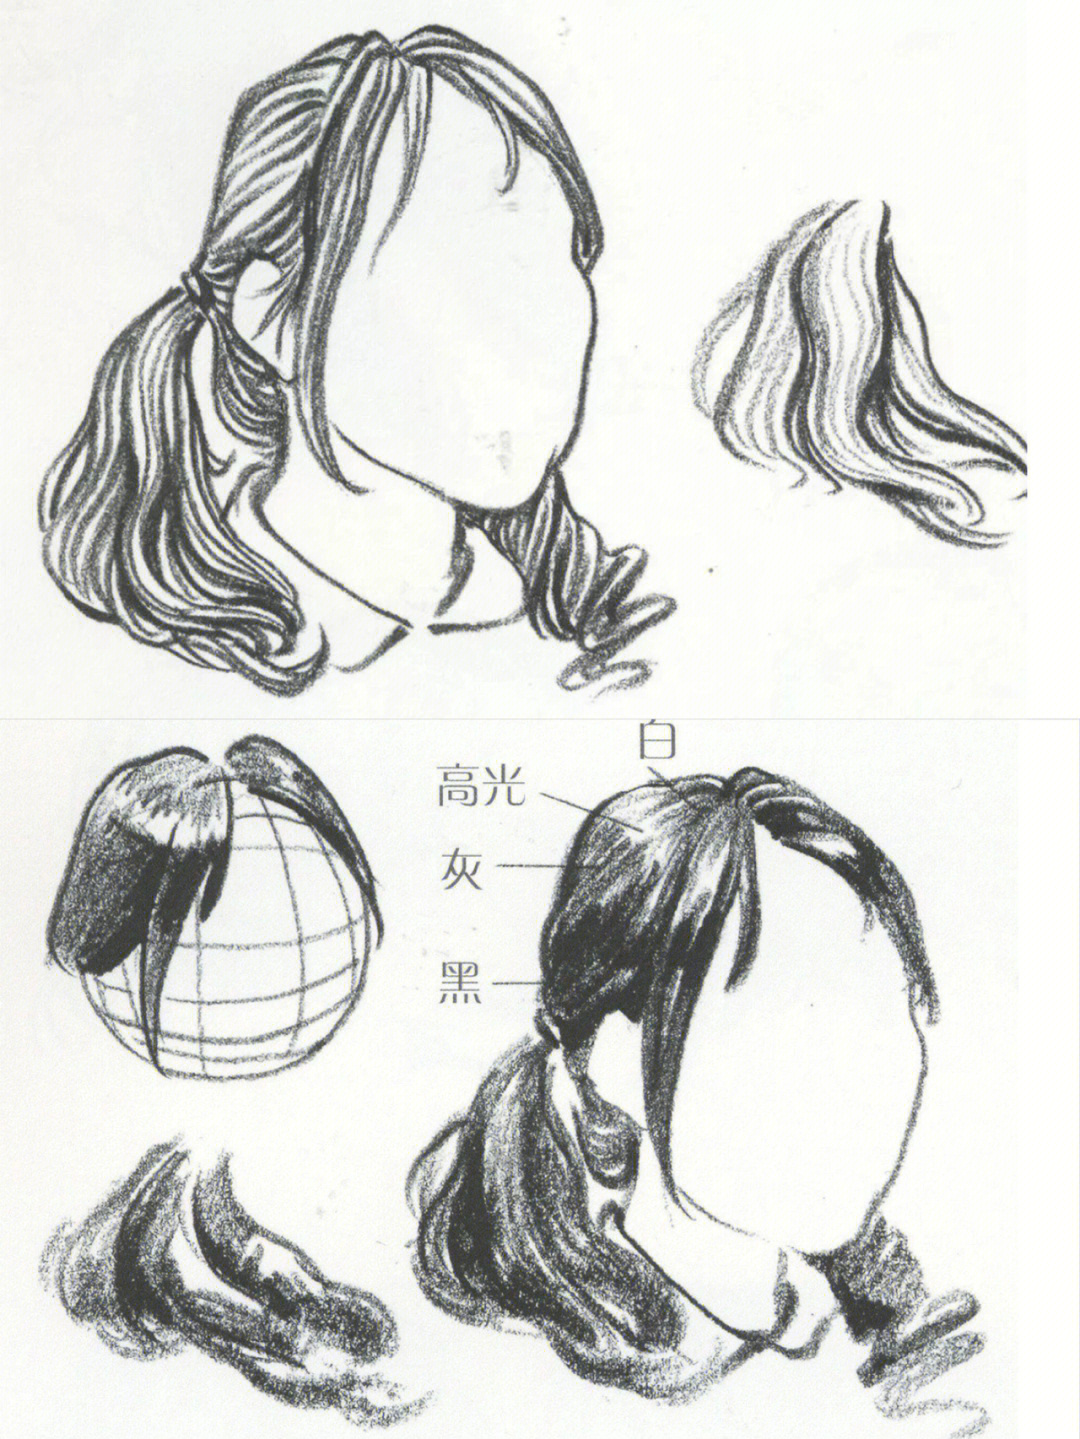 线描速写头发:头发的分组之间用较重的线区分